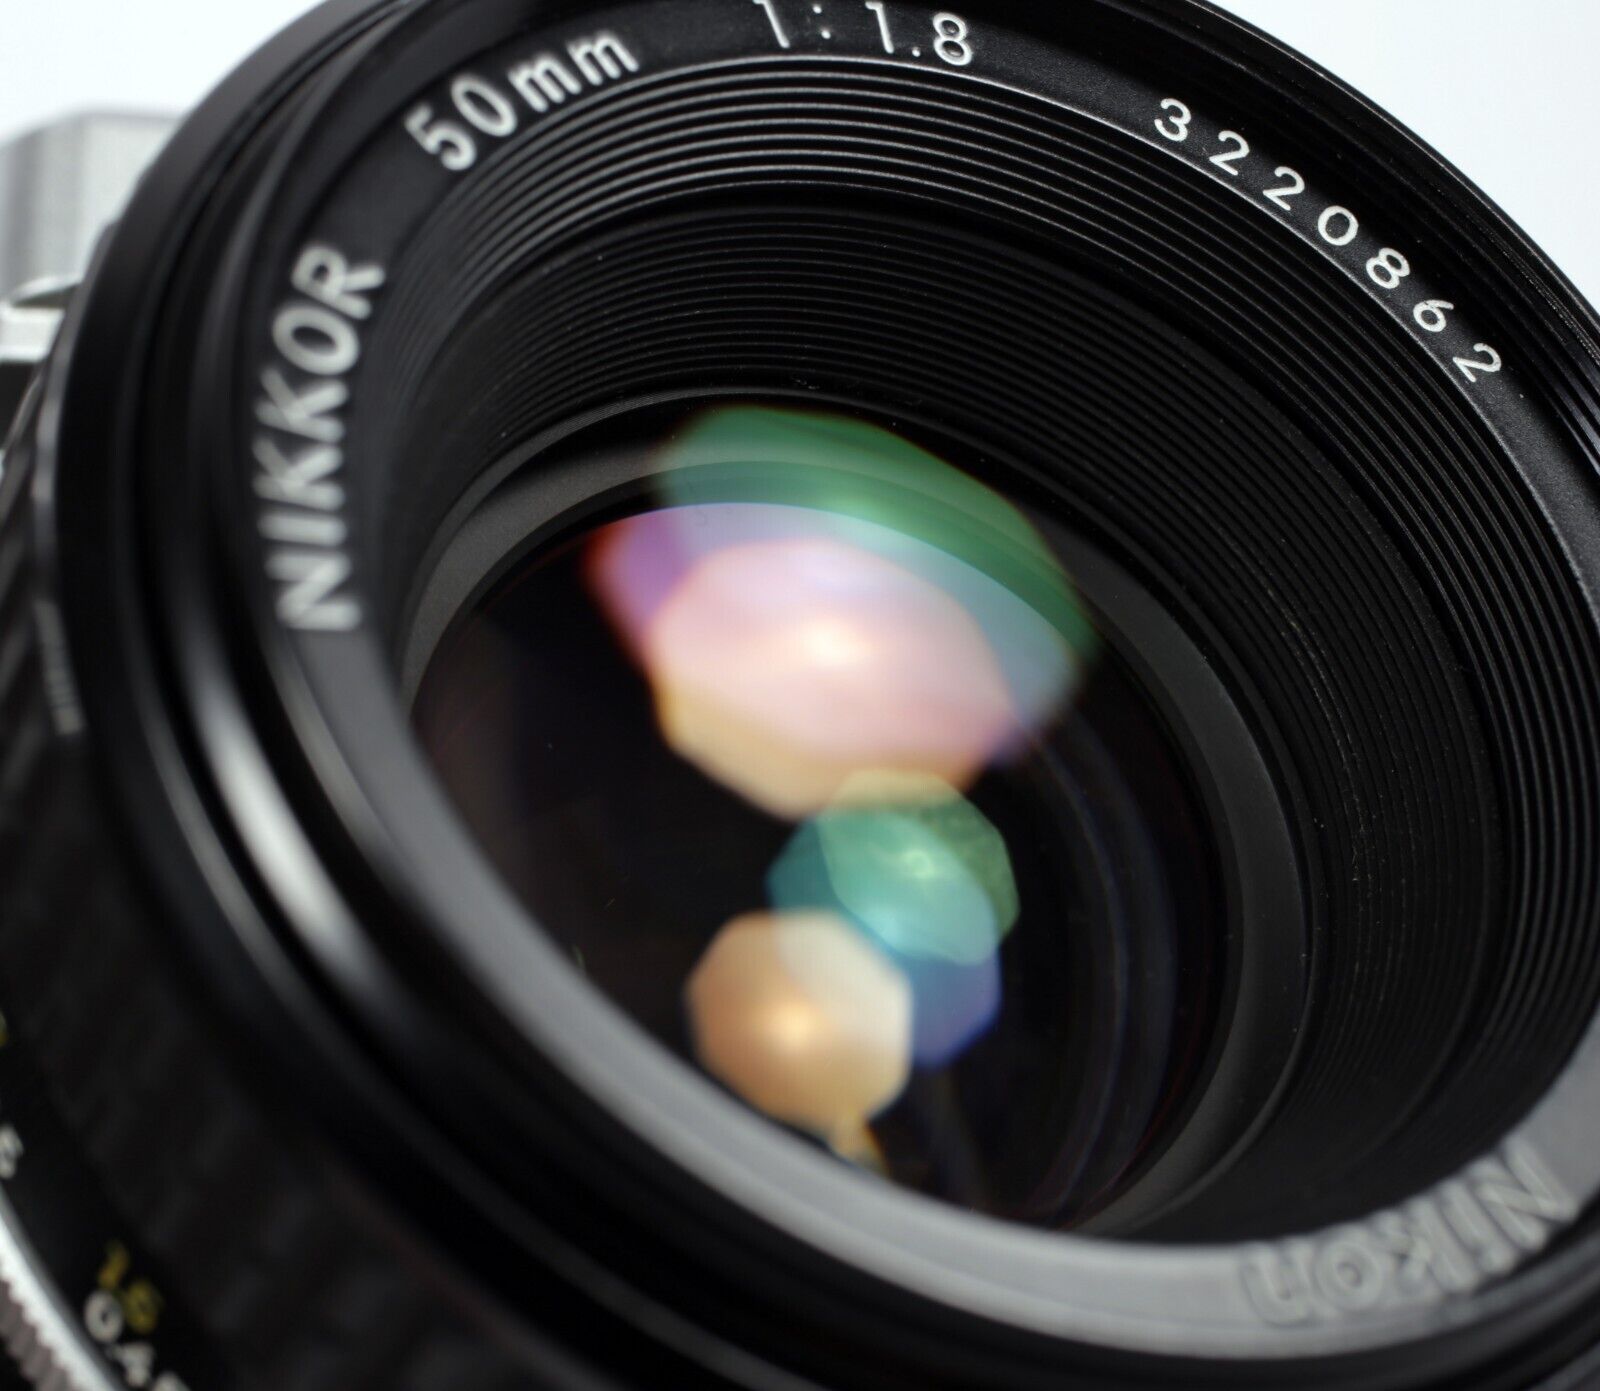 Nikon FE2 35mm SLR Film Camera with 50mm F1.8 Nikkor lens #128 ...